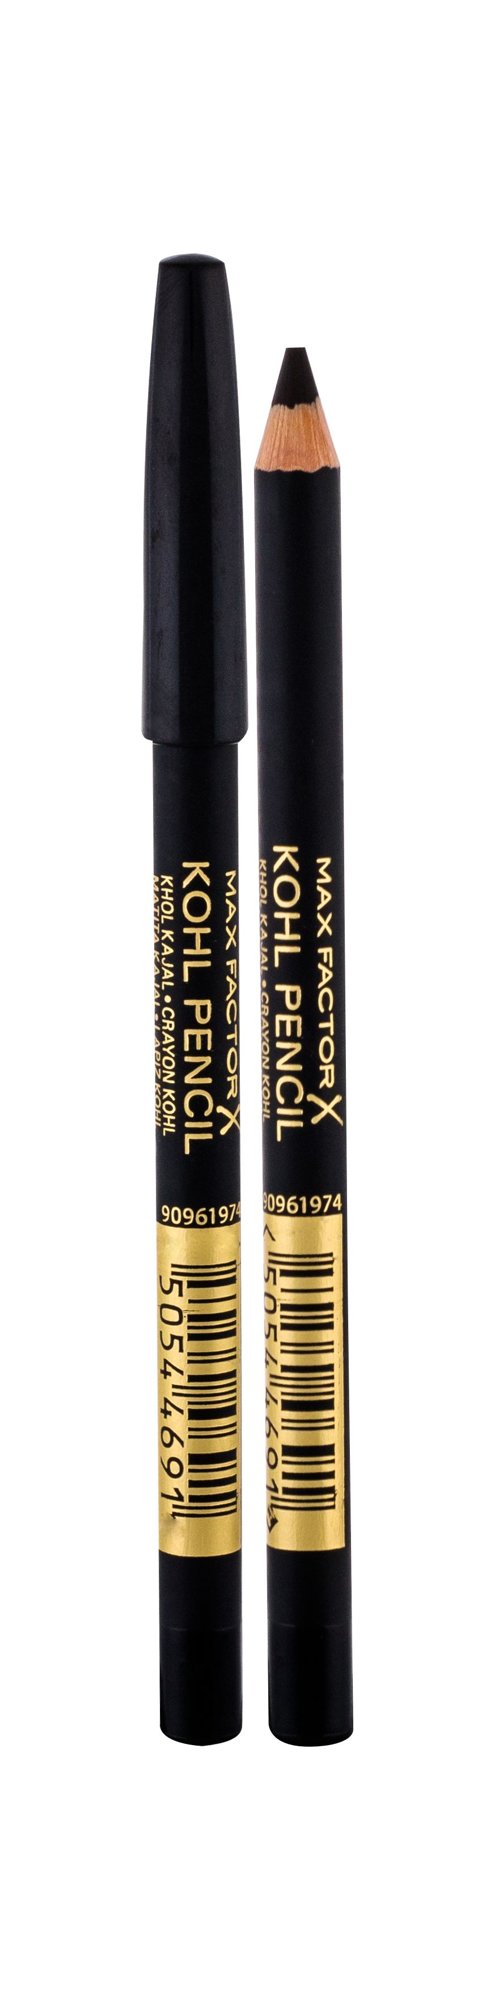 Max Factor Kohl Pencil 3,5g akių pieštukas